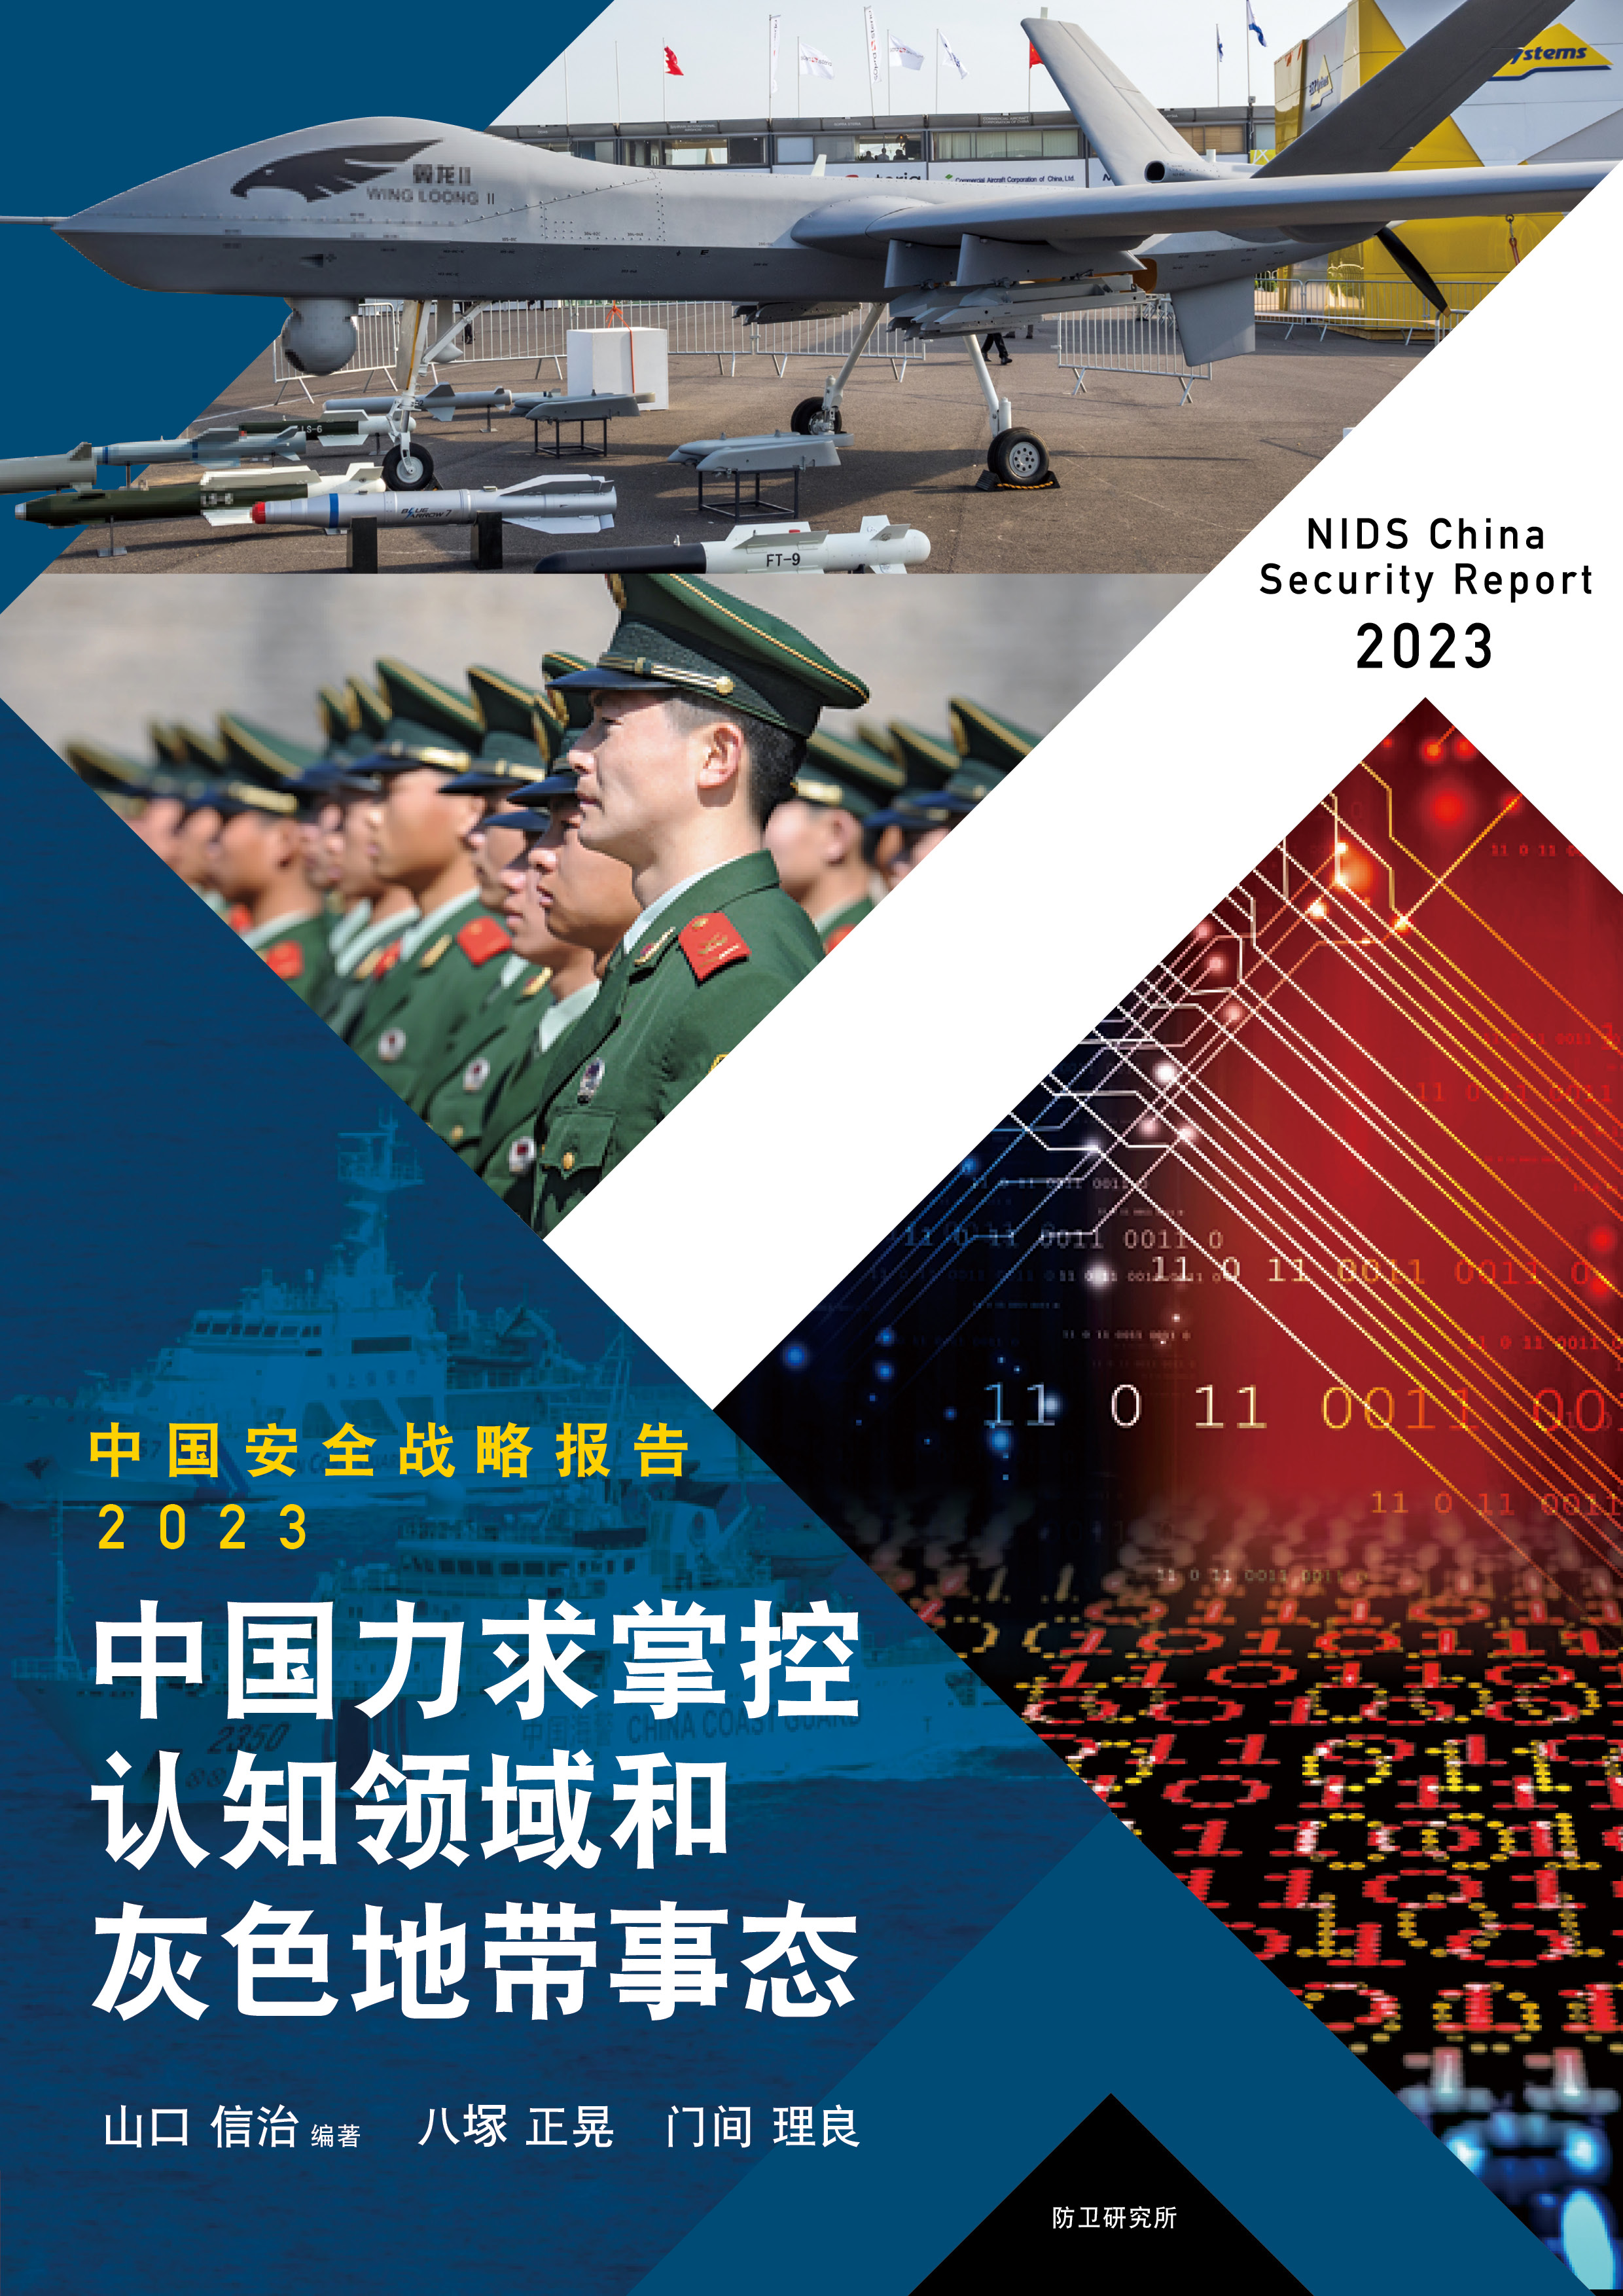 中国安全战略报告 2023　―中国力求掌控认知领域和灰色地带事态 ―